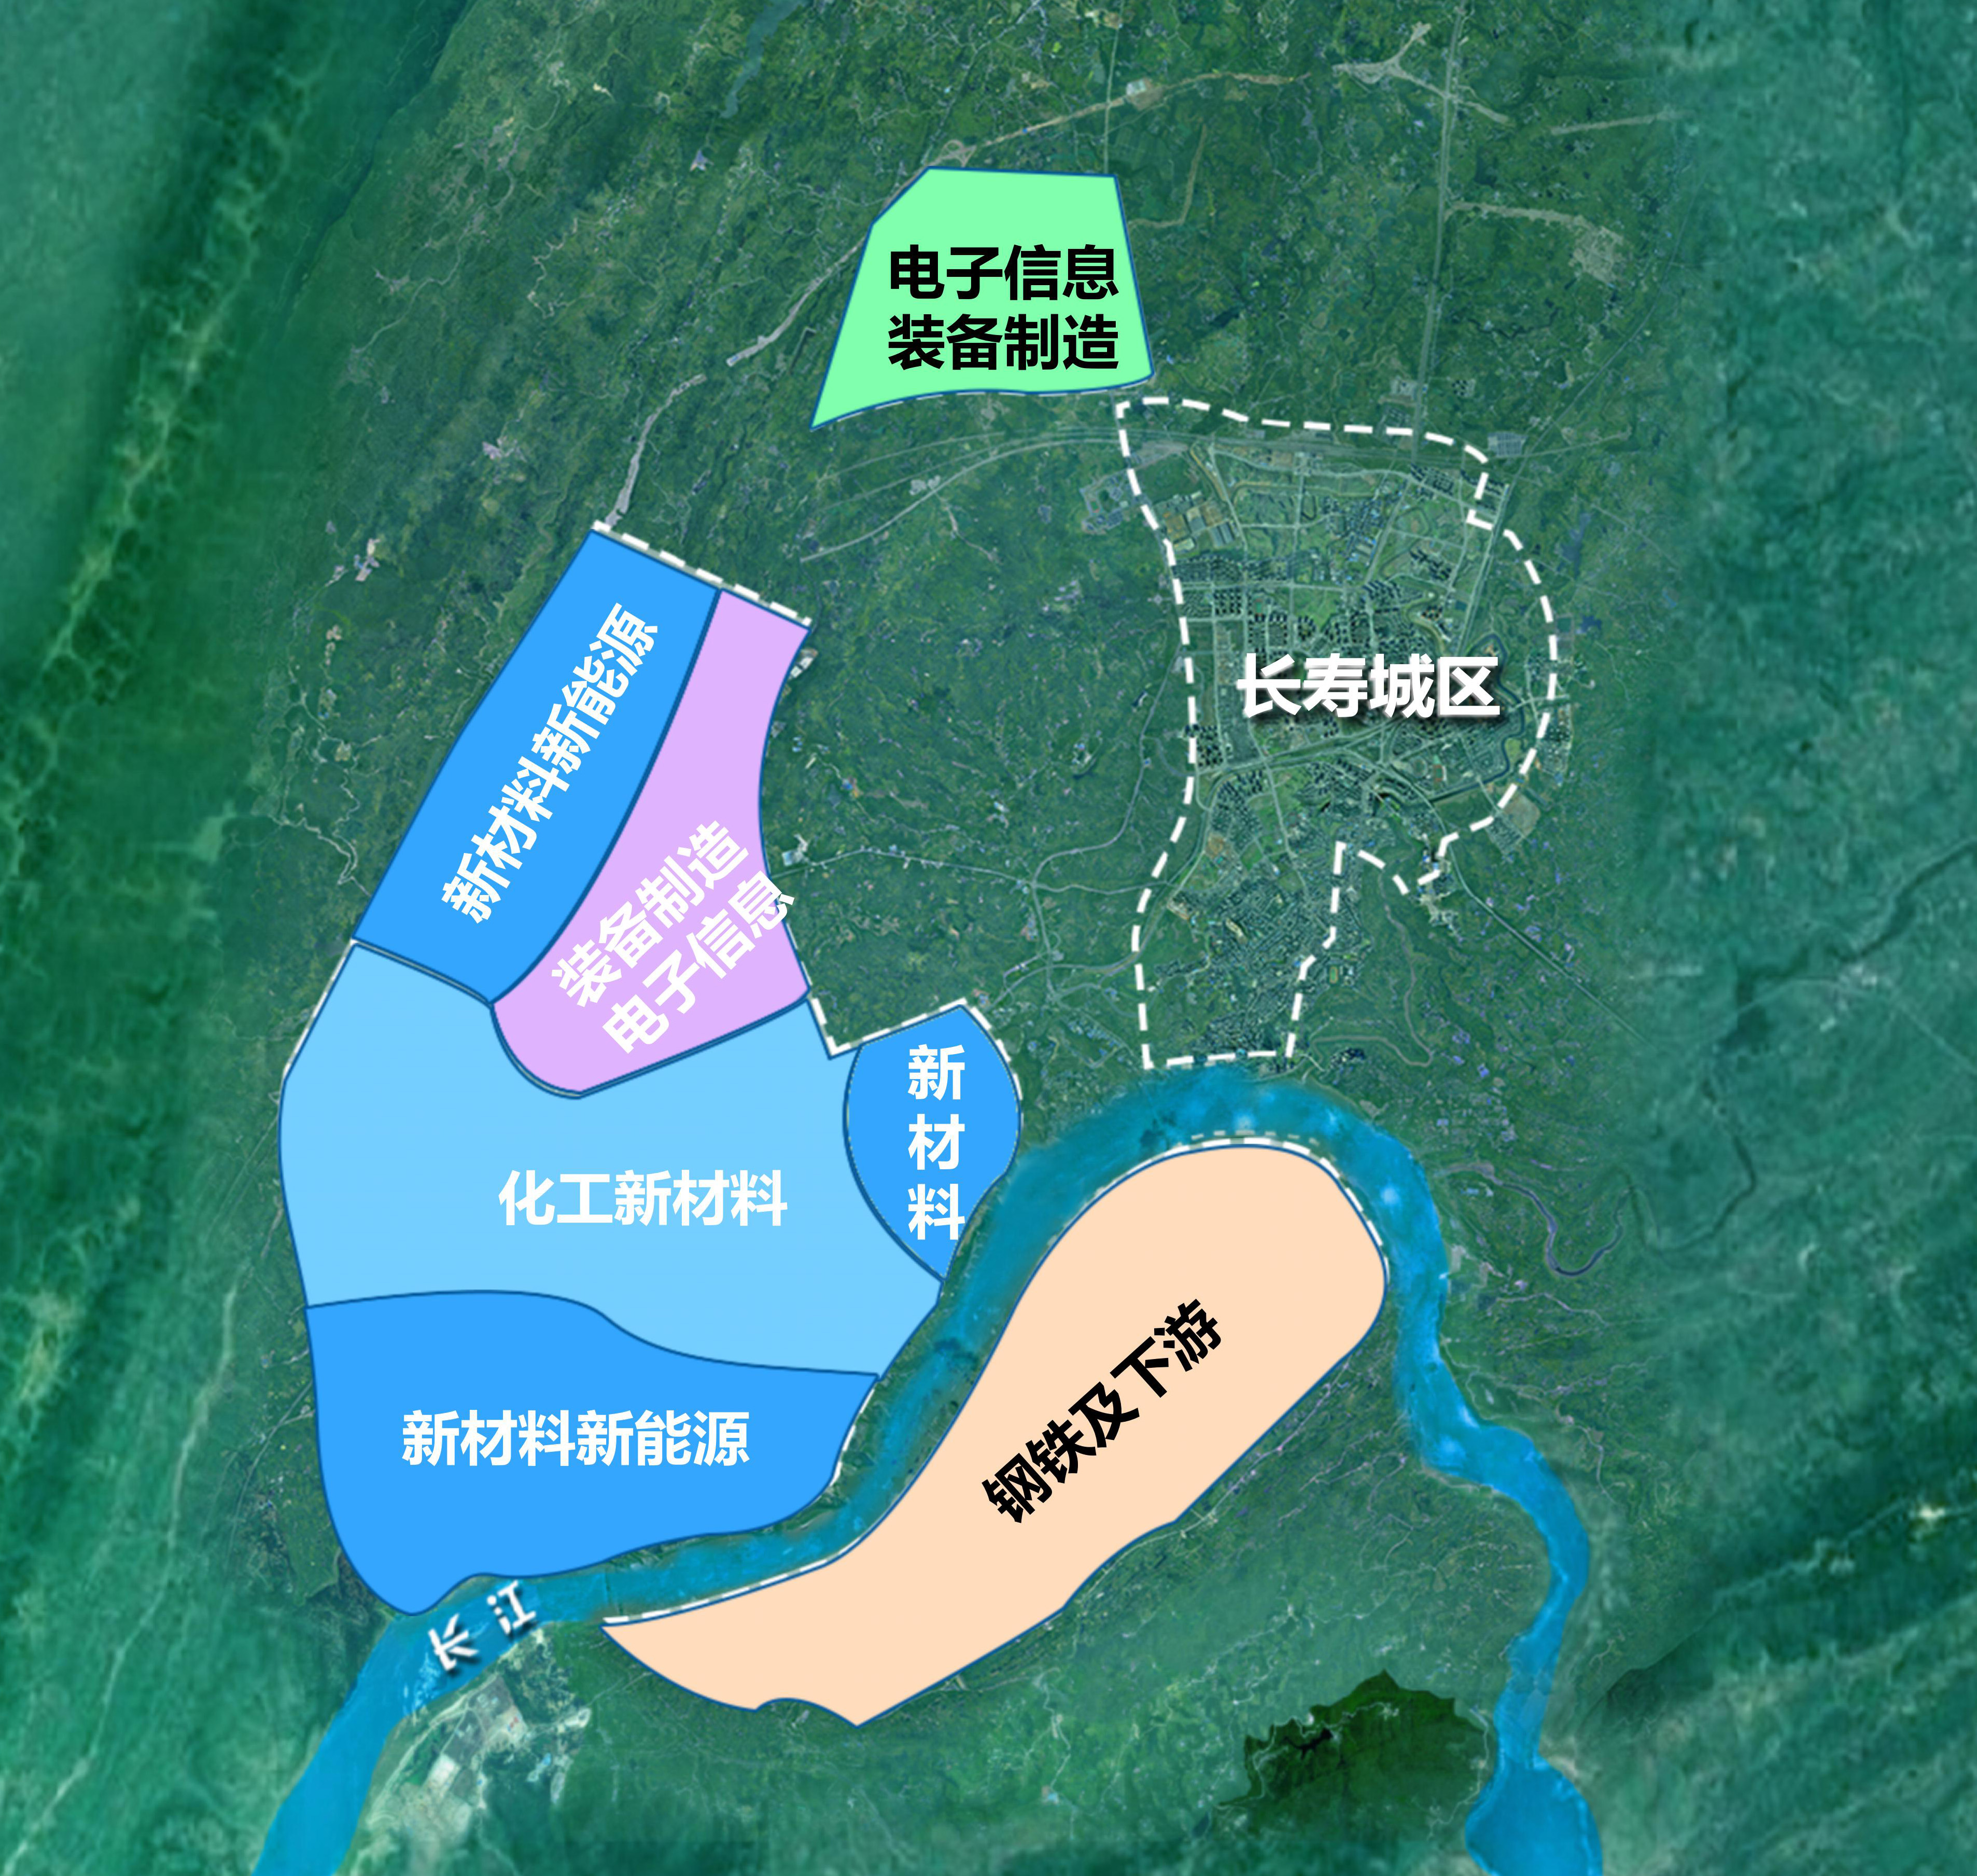 长寿区北部新城规划图片